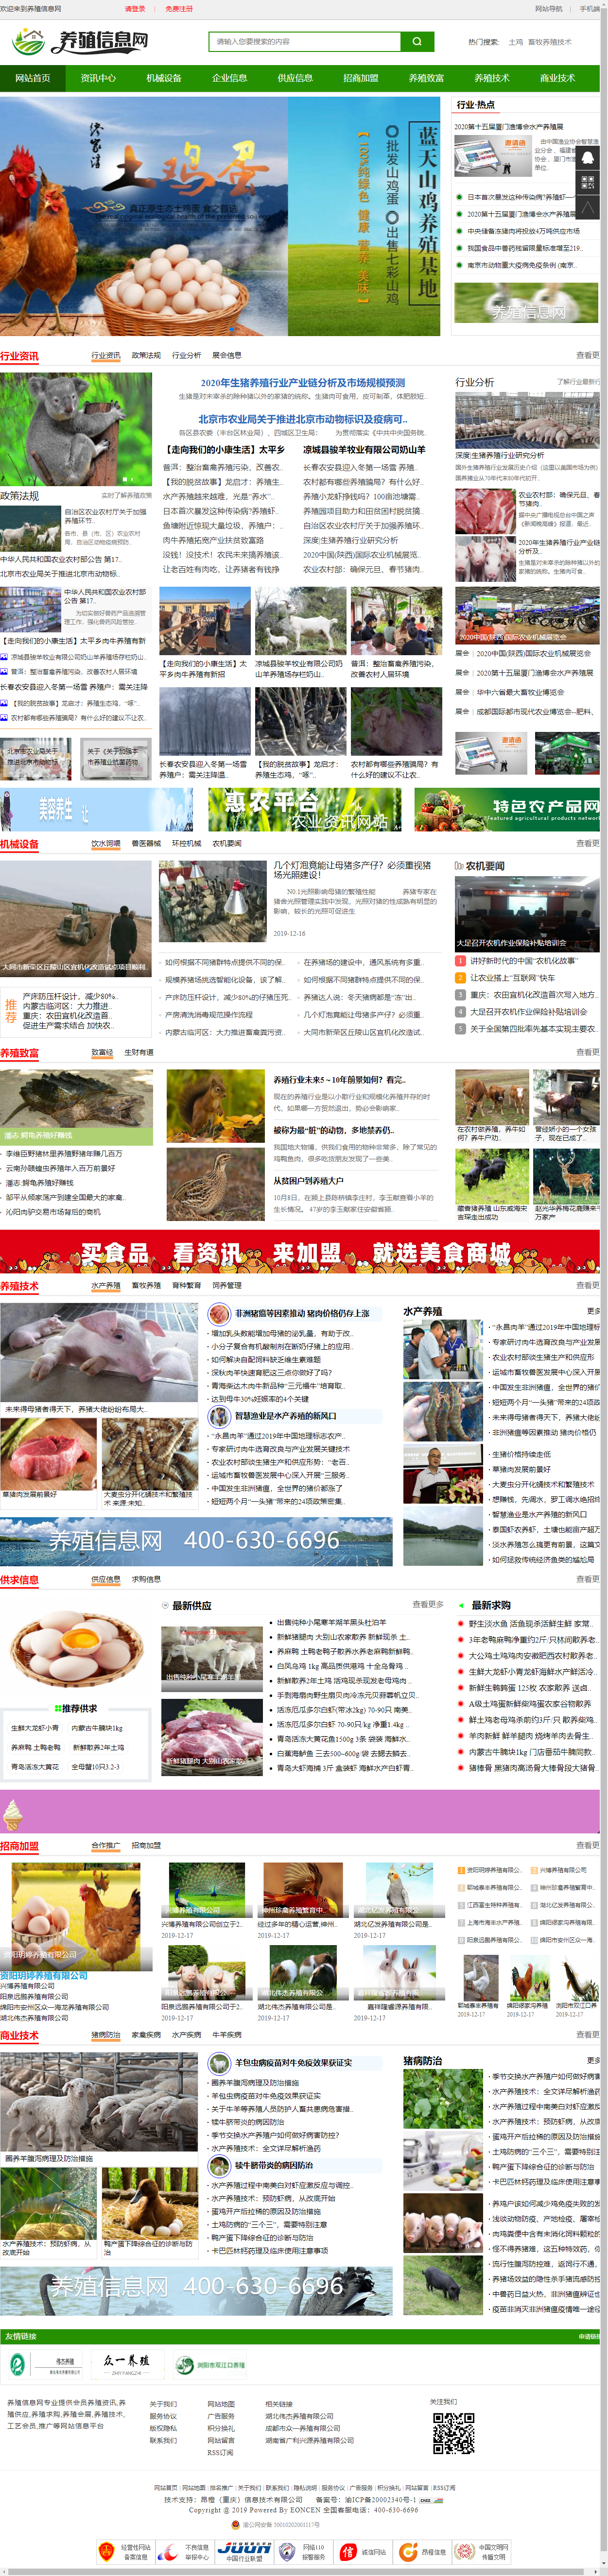 重庆市涪陵区余伟水产品养殖专业合作社网站案例